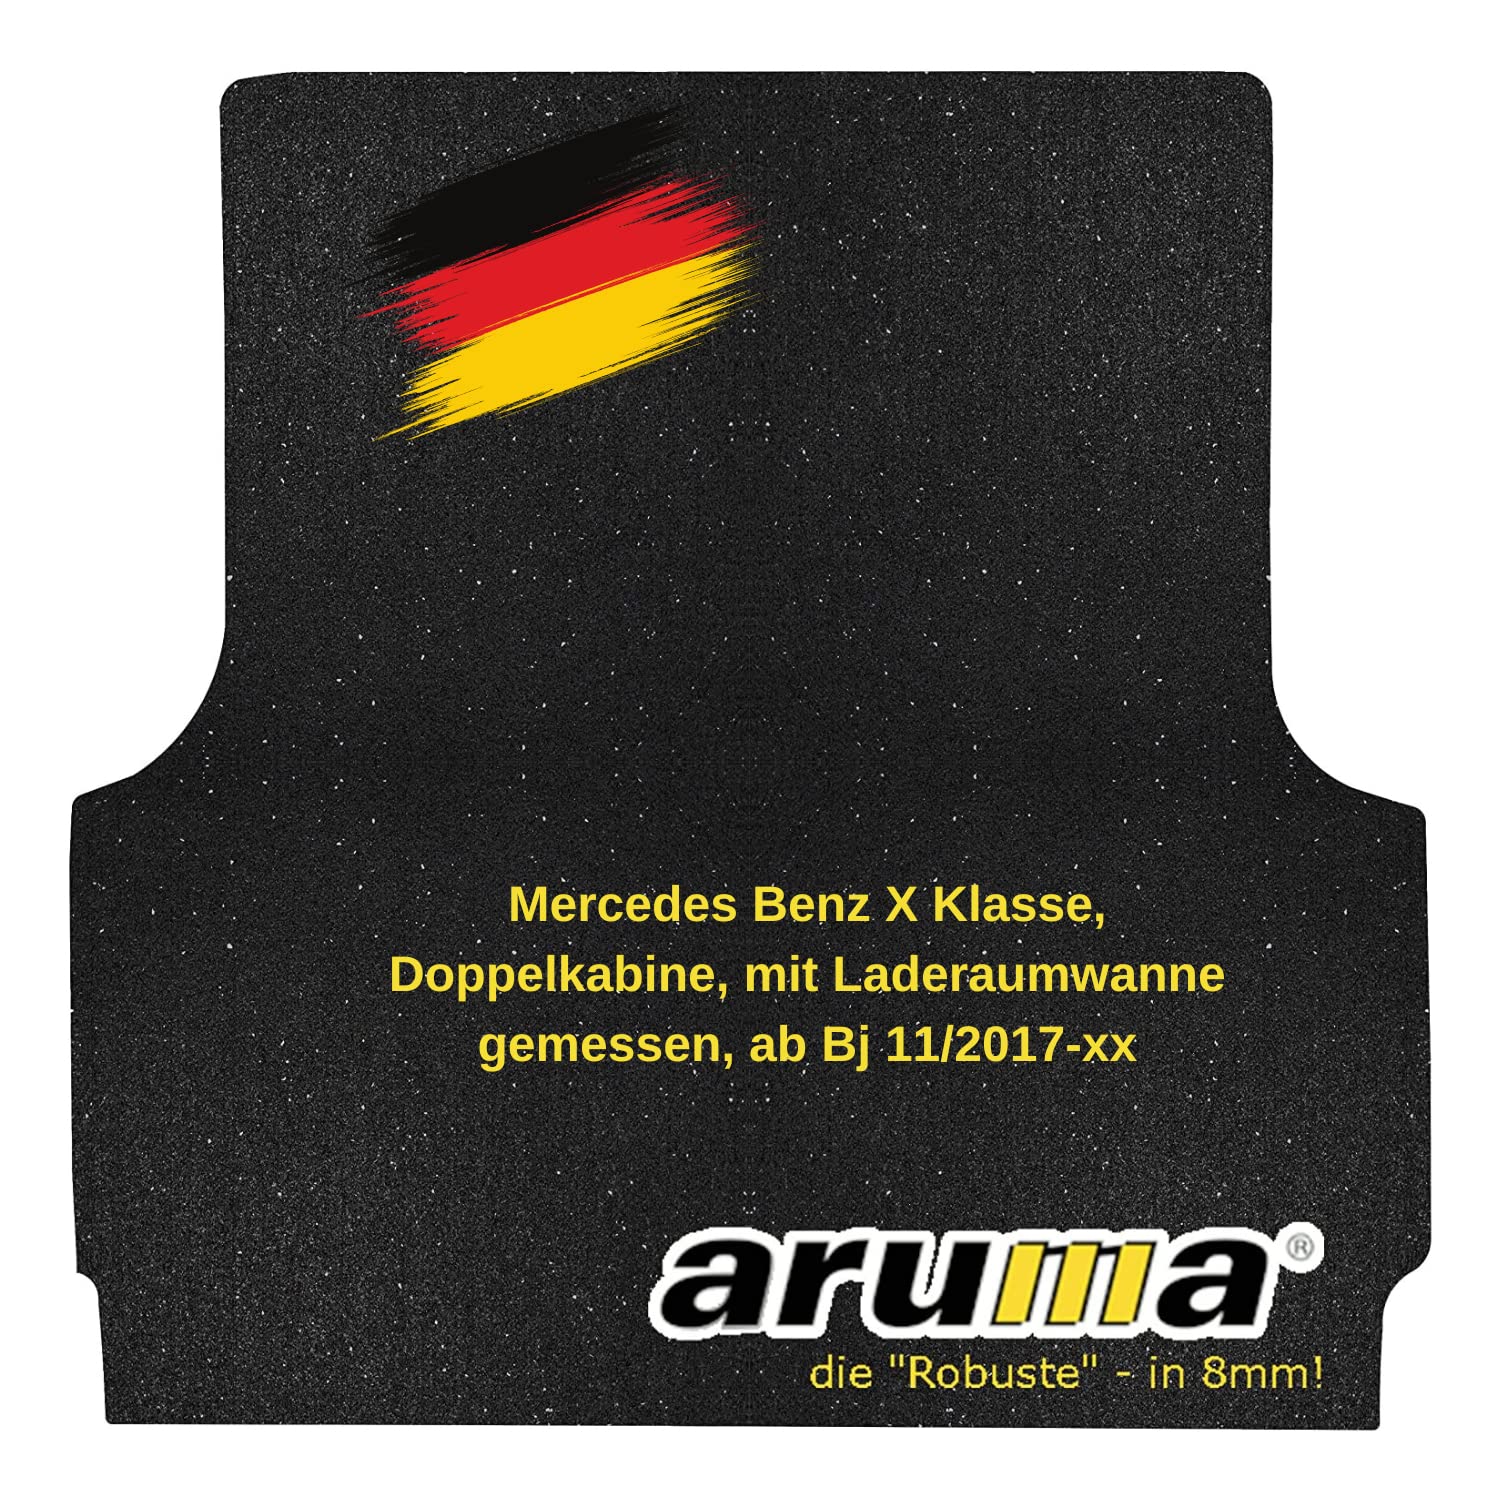 aruma® Antirutschmatte Laderaummatte kompatibel für Mercedes Benz X Klasse, Doppelkabine, mit Laderaumwanne gemessen, ab Bj 11/2017-xx | rutschfeste Unterlage | Schützt vor Verschmutzung